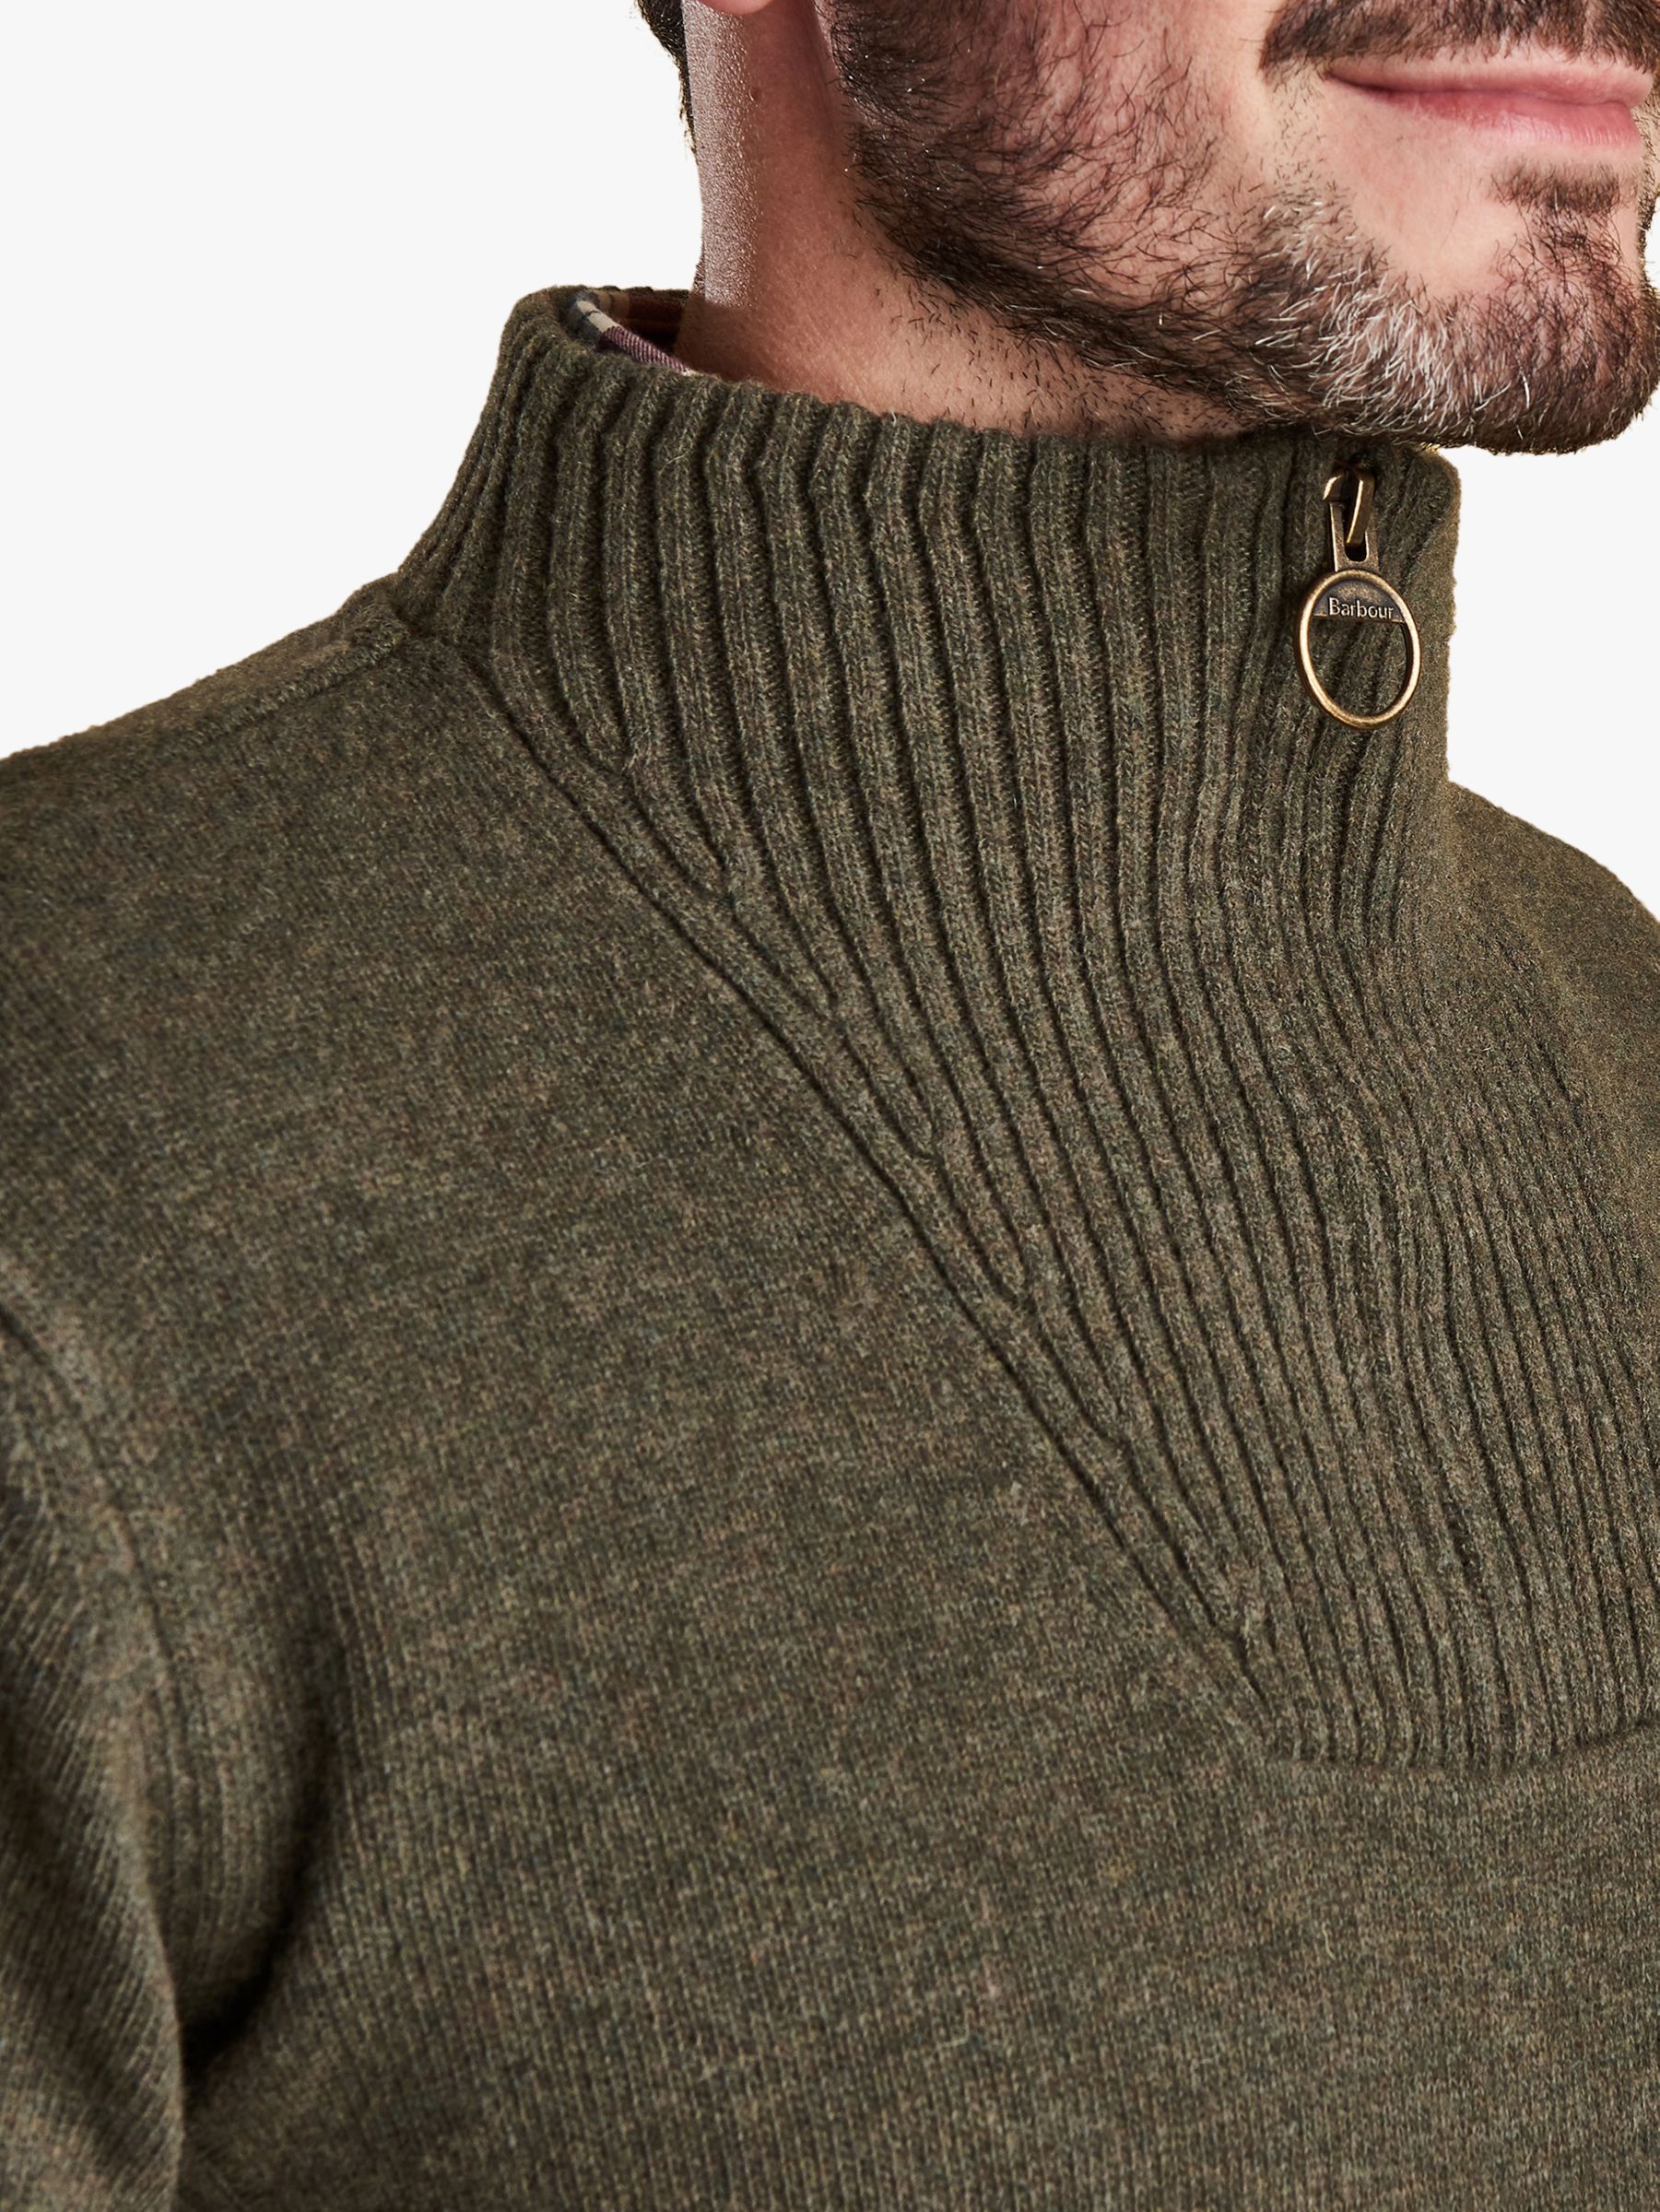 barbour nelson half zip sweater